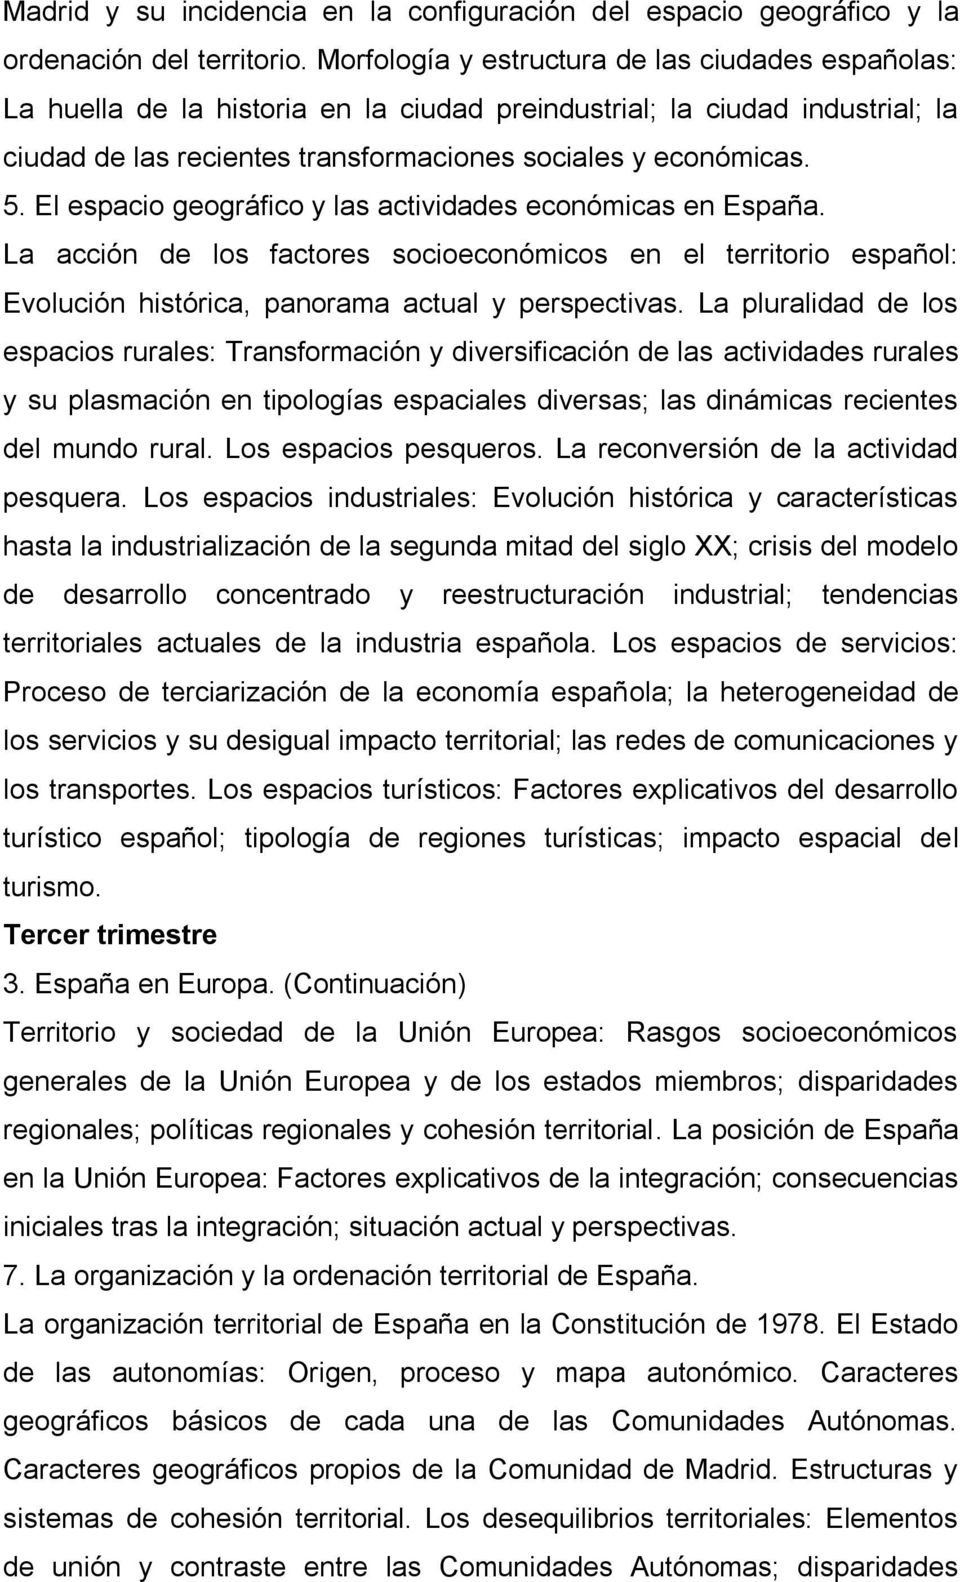 El espacio geográfico y las actividades económicas en España. La acción de los factores socioeconómicos en el territorio español: Evolución histórica, panorama actual y perspectivas.